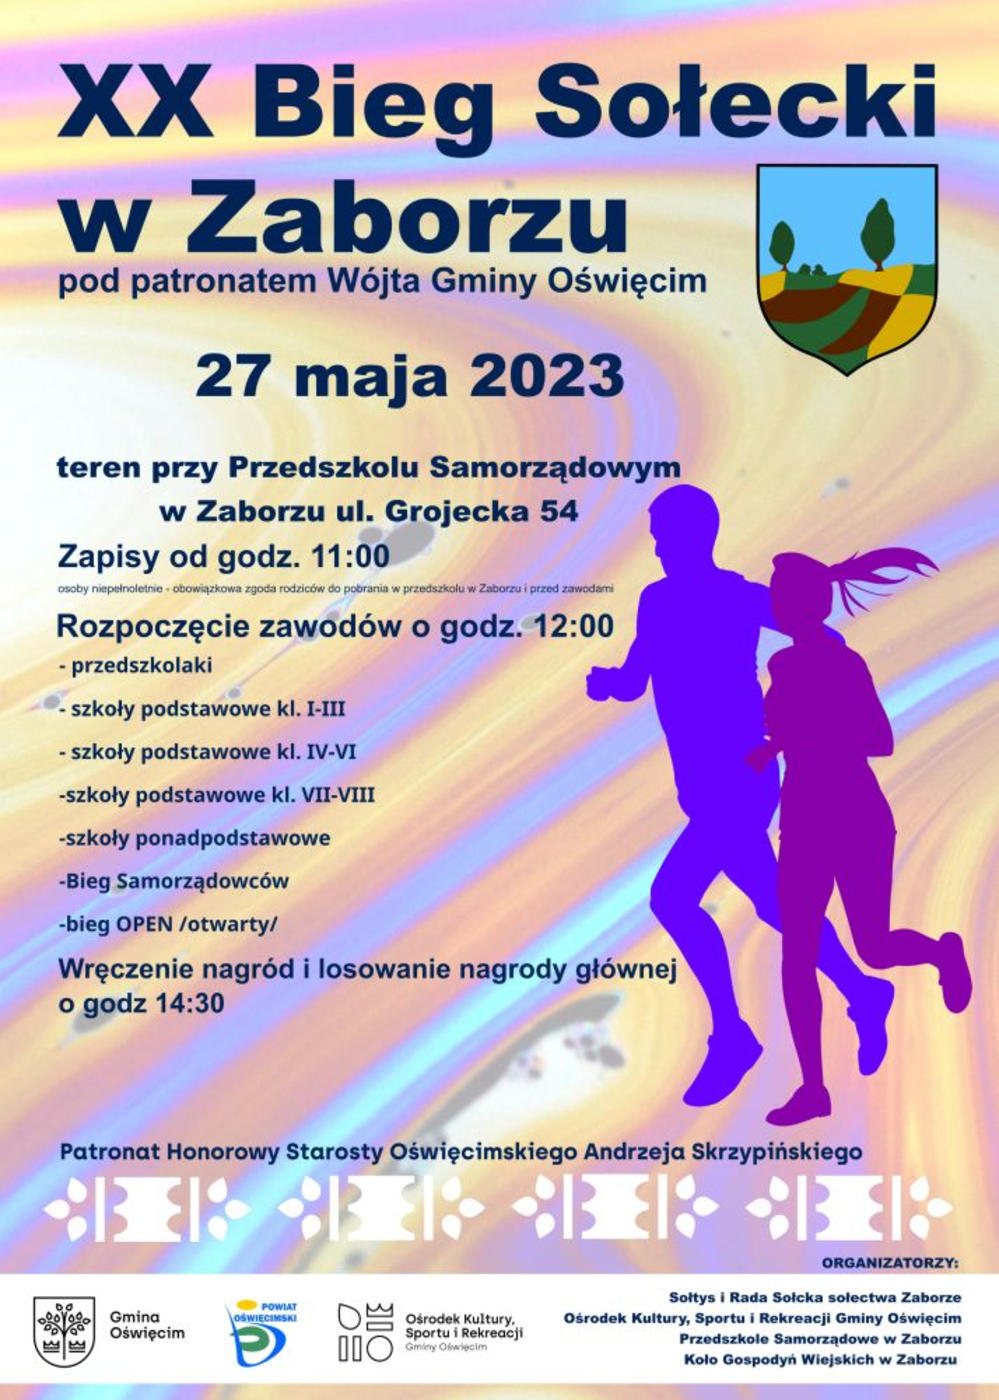 Miłośnicy biegania i aktywności fizycznej mogą przybyć na sobotnią, już 20. edycję Biegu Sołeckiego w Zaborzu.